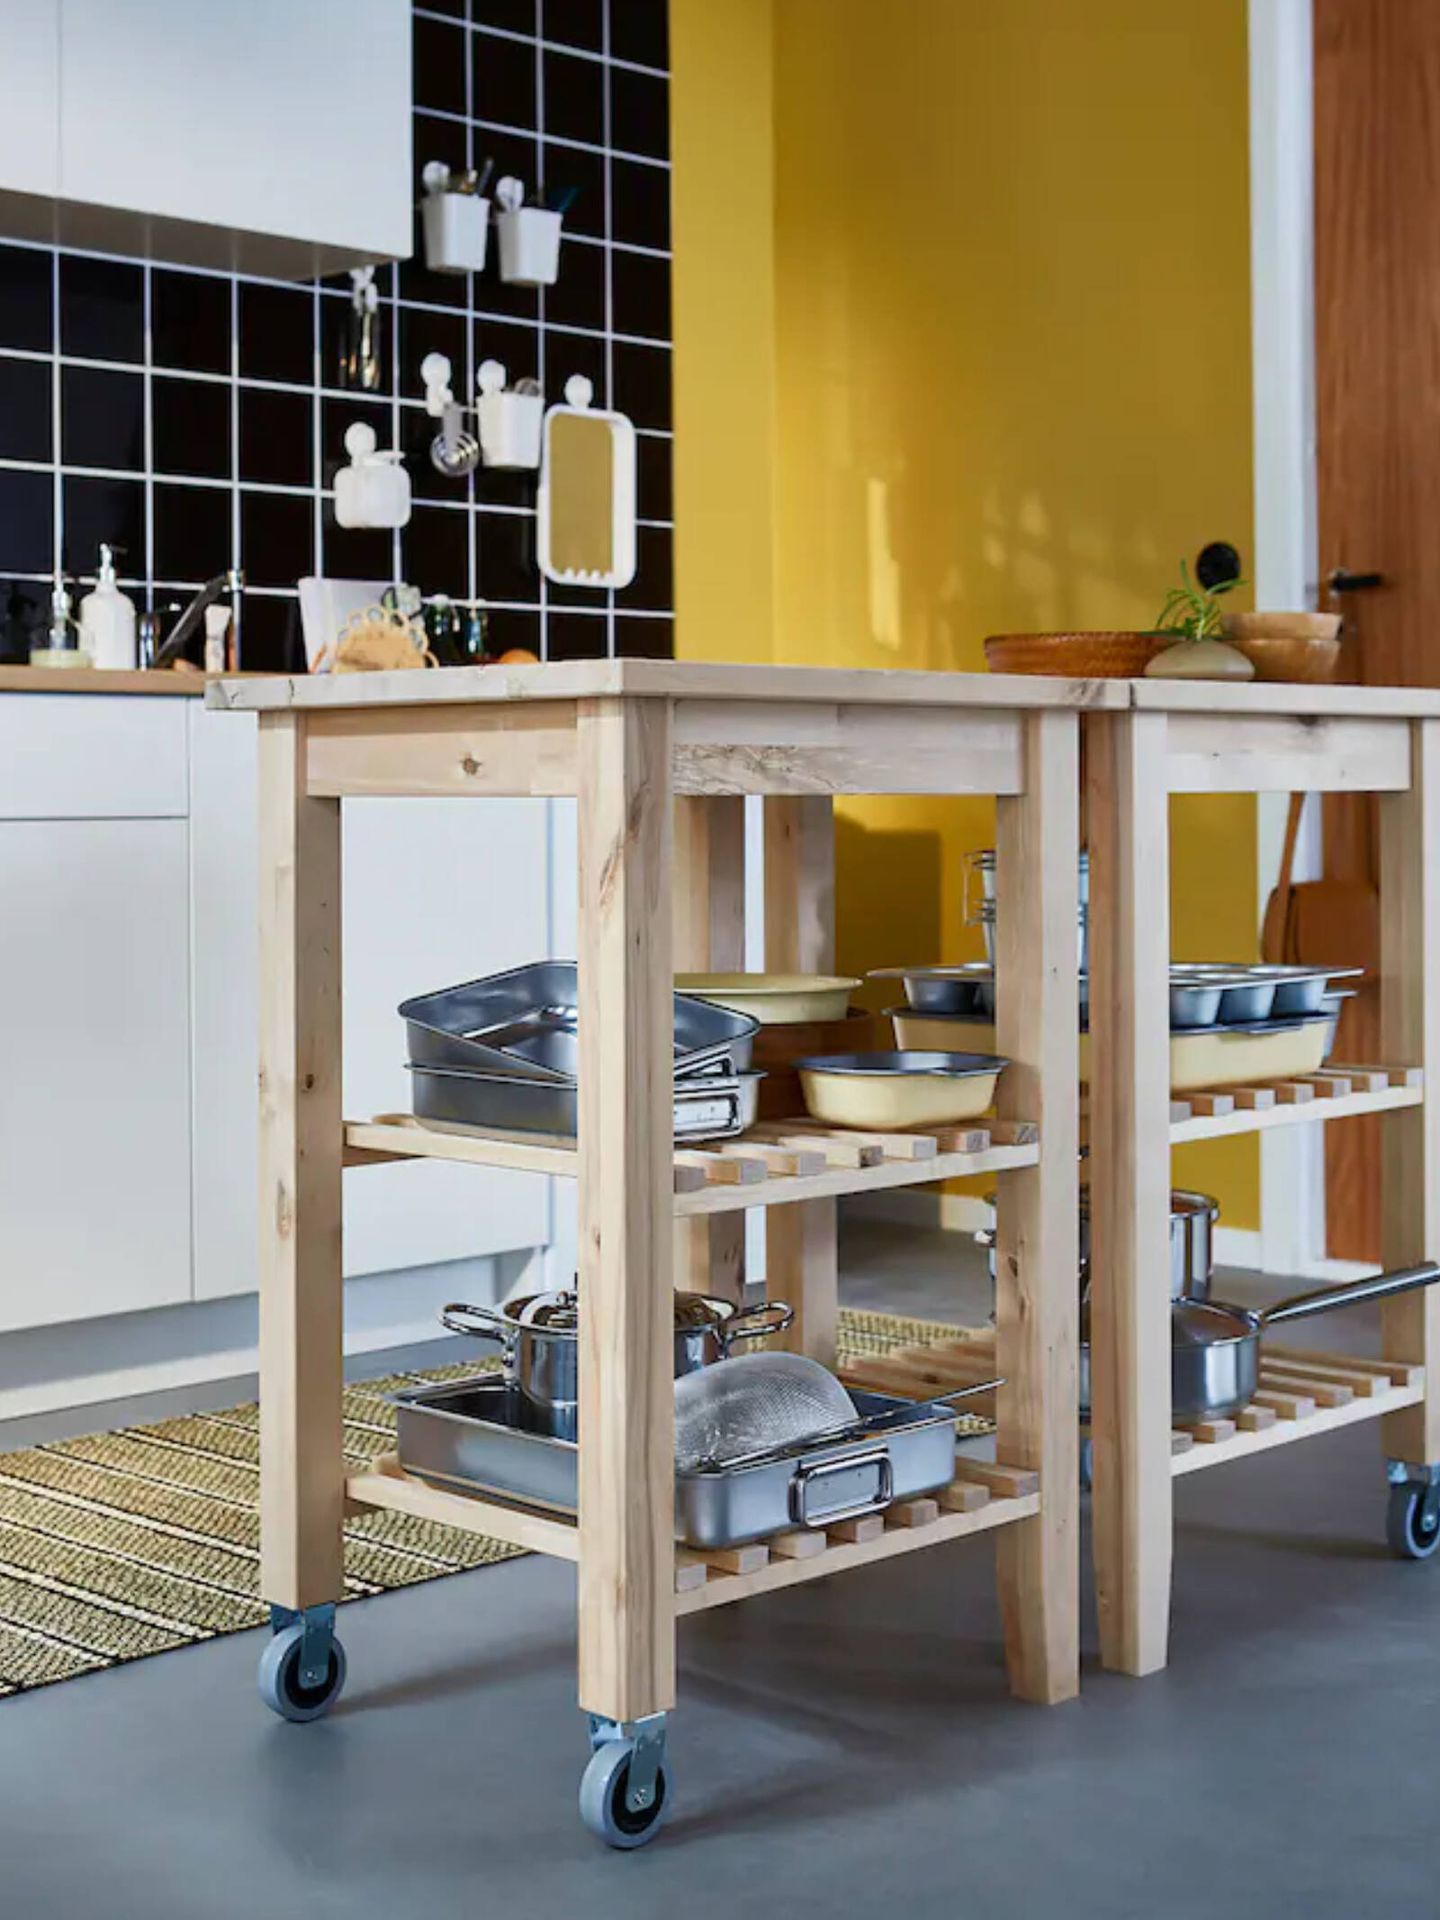 Soluciones de Ikea y Shein Home para cocinas pequeñas. (Cortesía/Ikea)